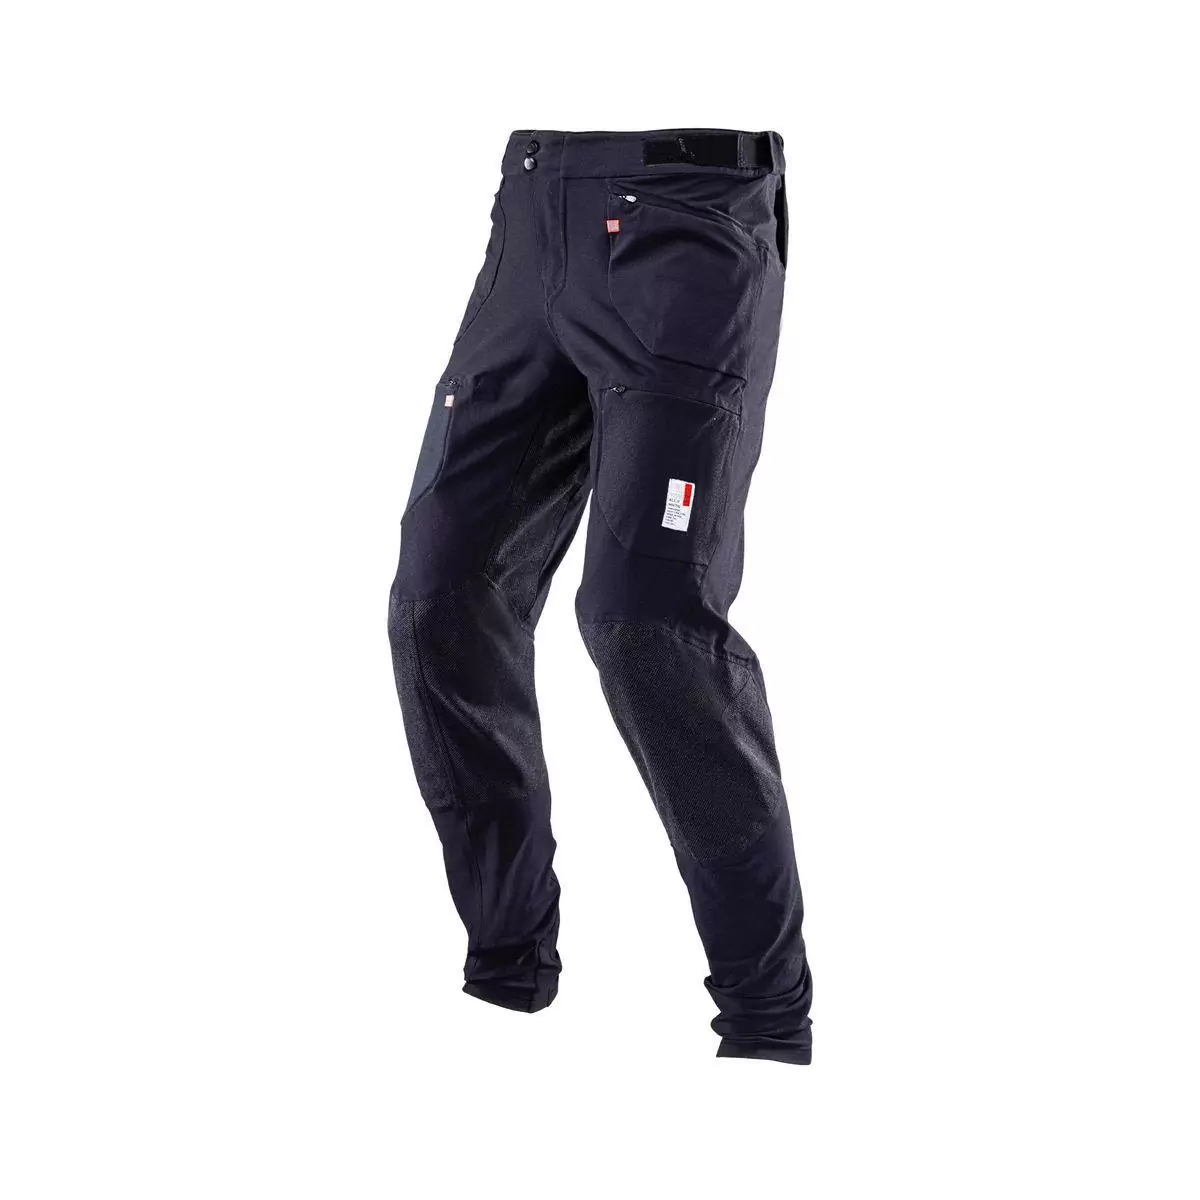 Pantalones MTB Allmtn 4.0 Largos Negro Talla XS - image